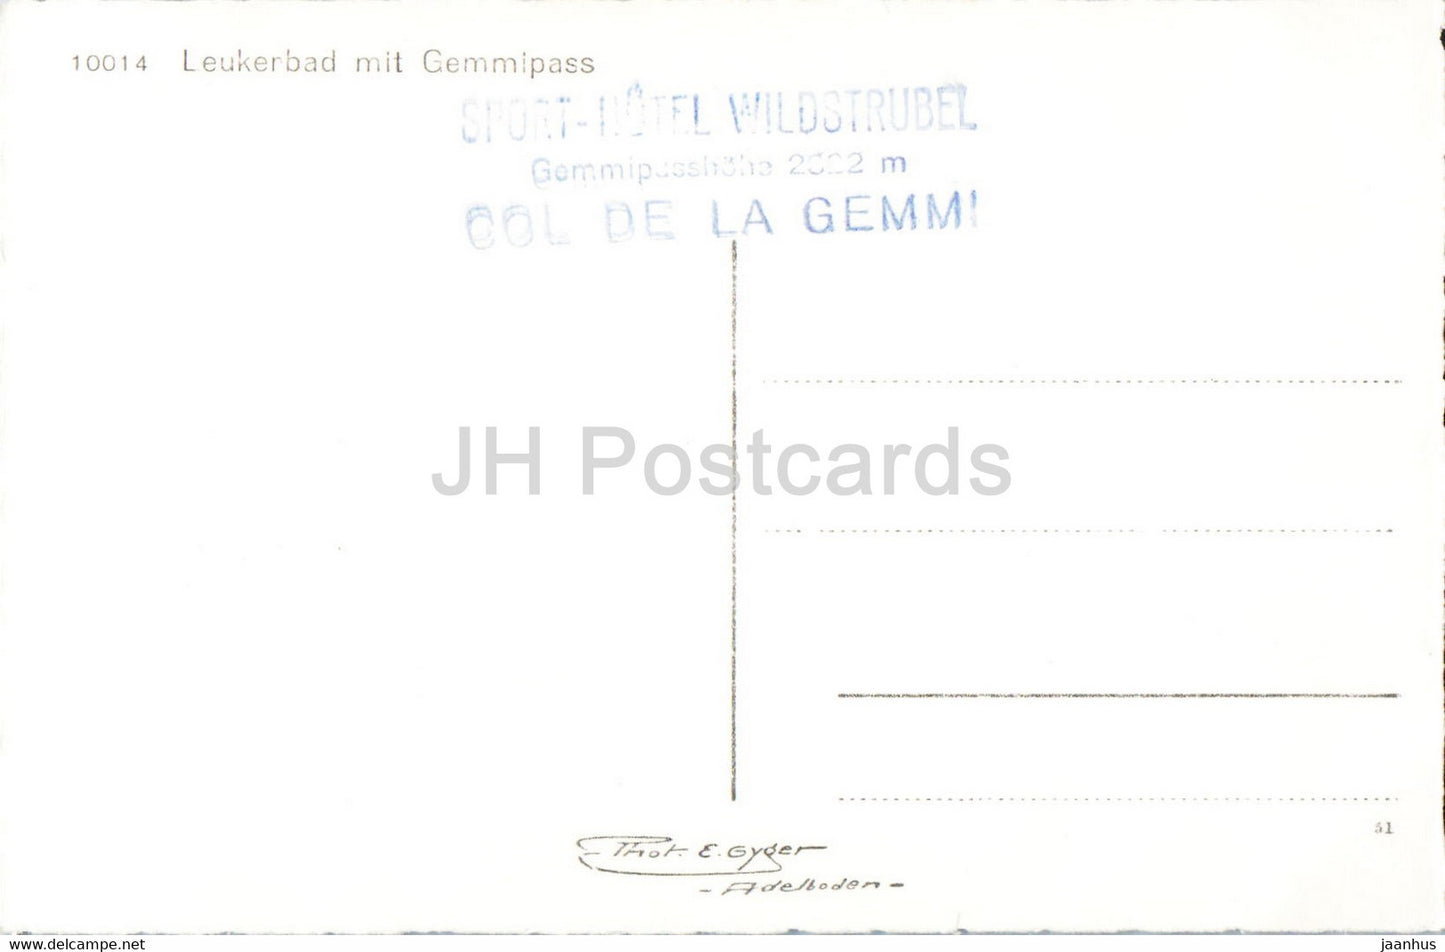 Leukerbad mit Gemmipass - 10014 - alte Postkarte - Schweiz - unbenutzt